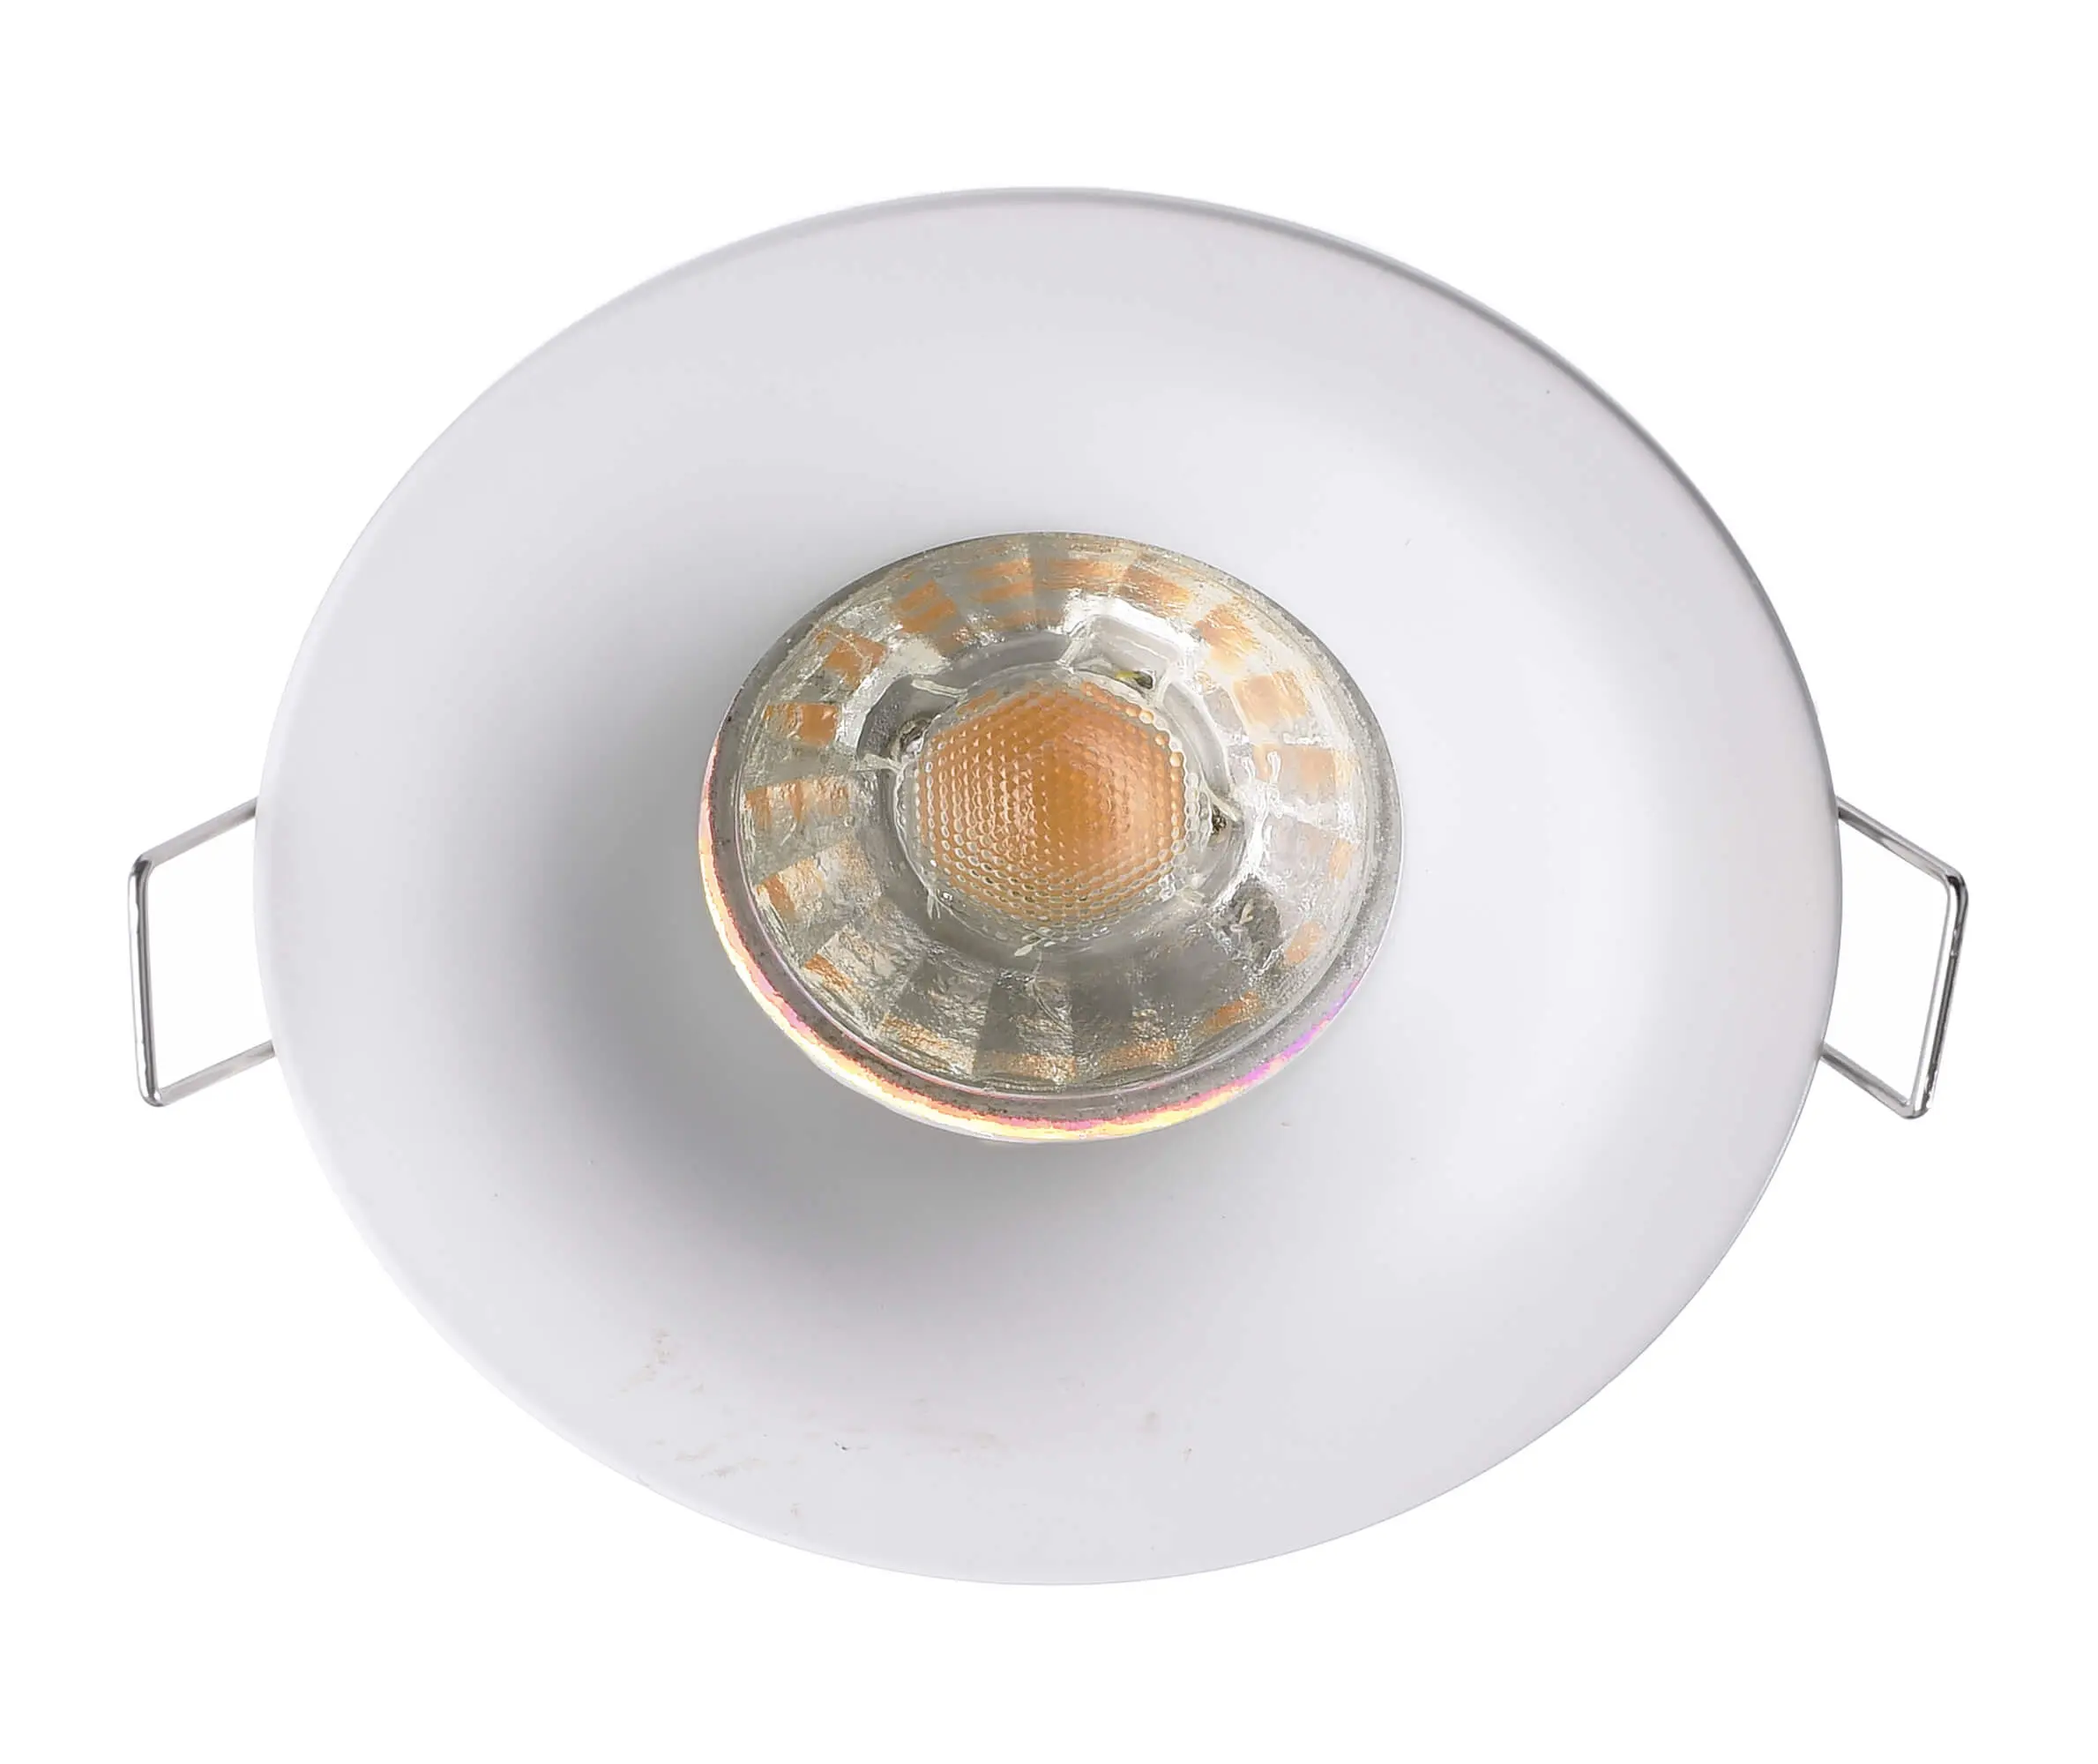 Einbaulampe Altair Dezent in rund, IP65, weiß, Ø 8,5 cm